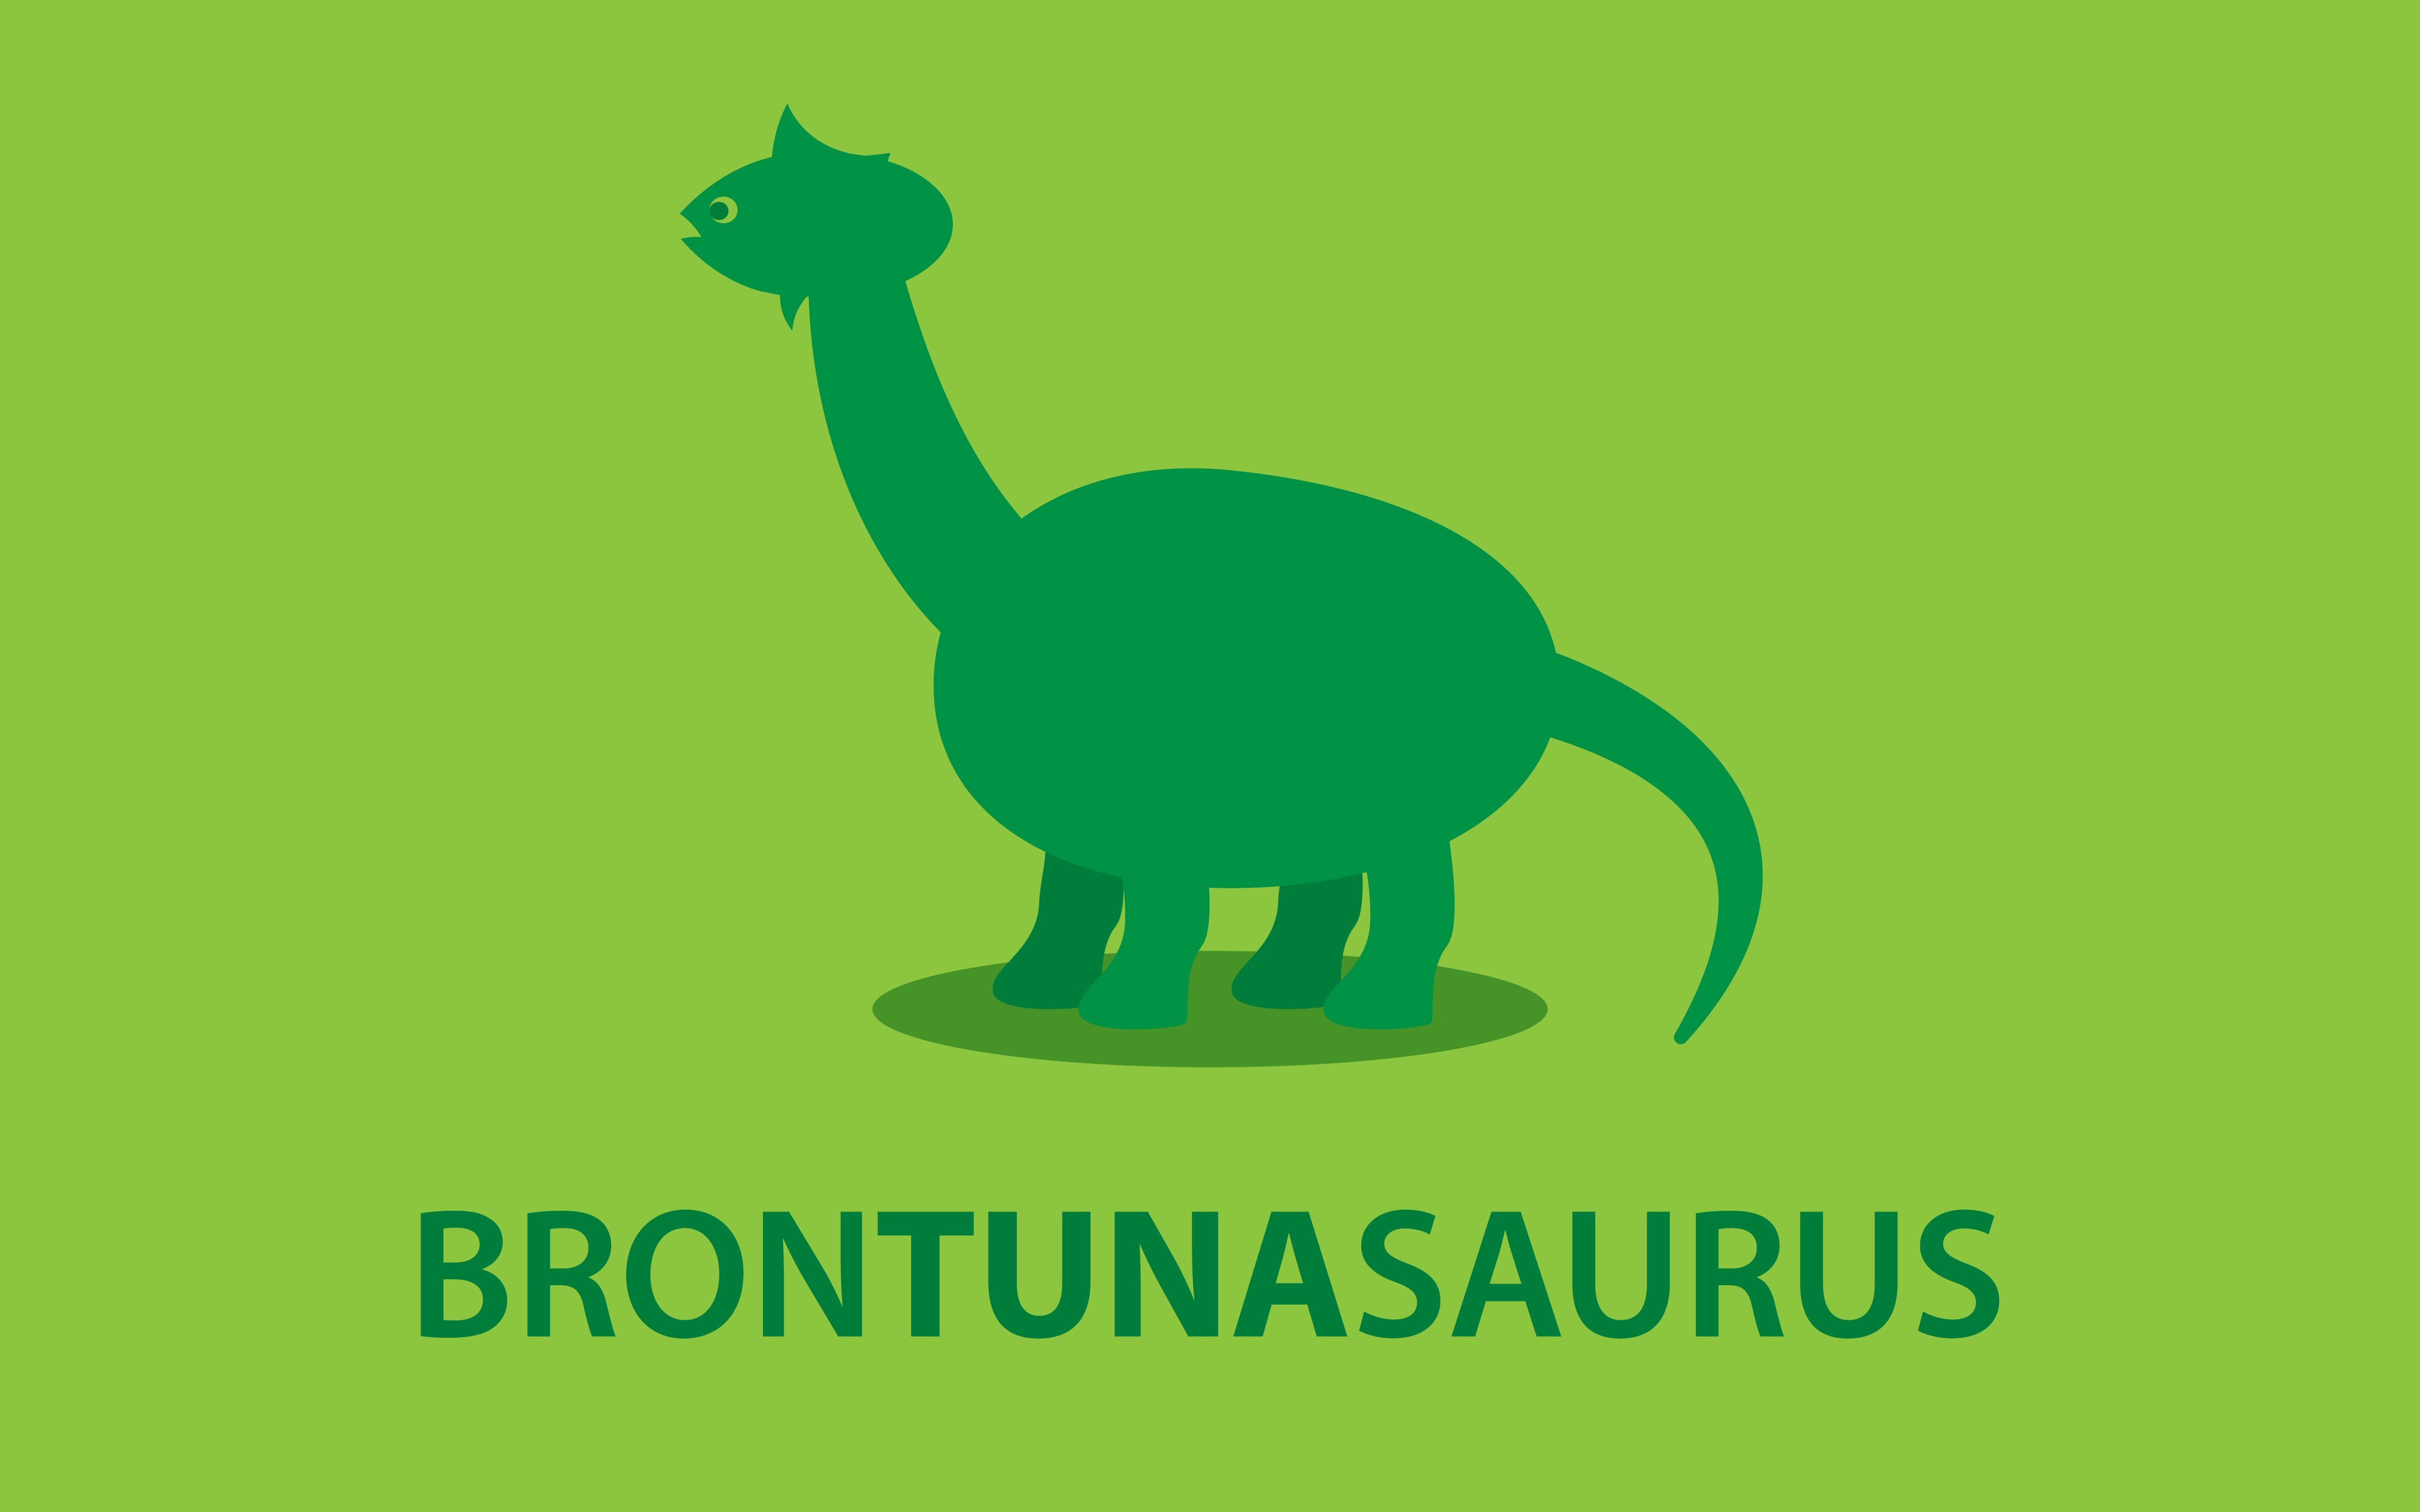 Скачать картинку Динозавр, Динозавры, Животные в телефон бесплатно.